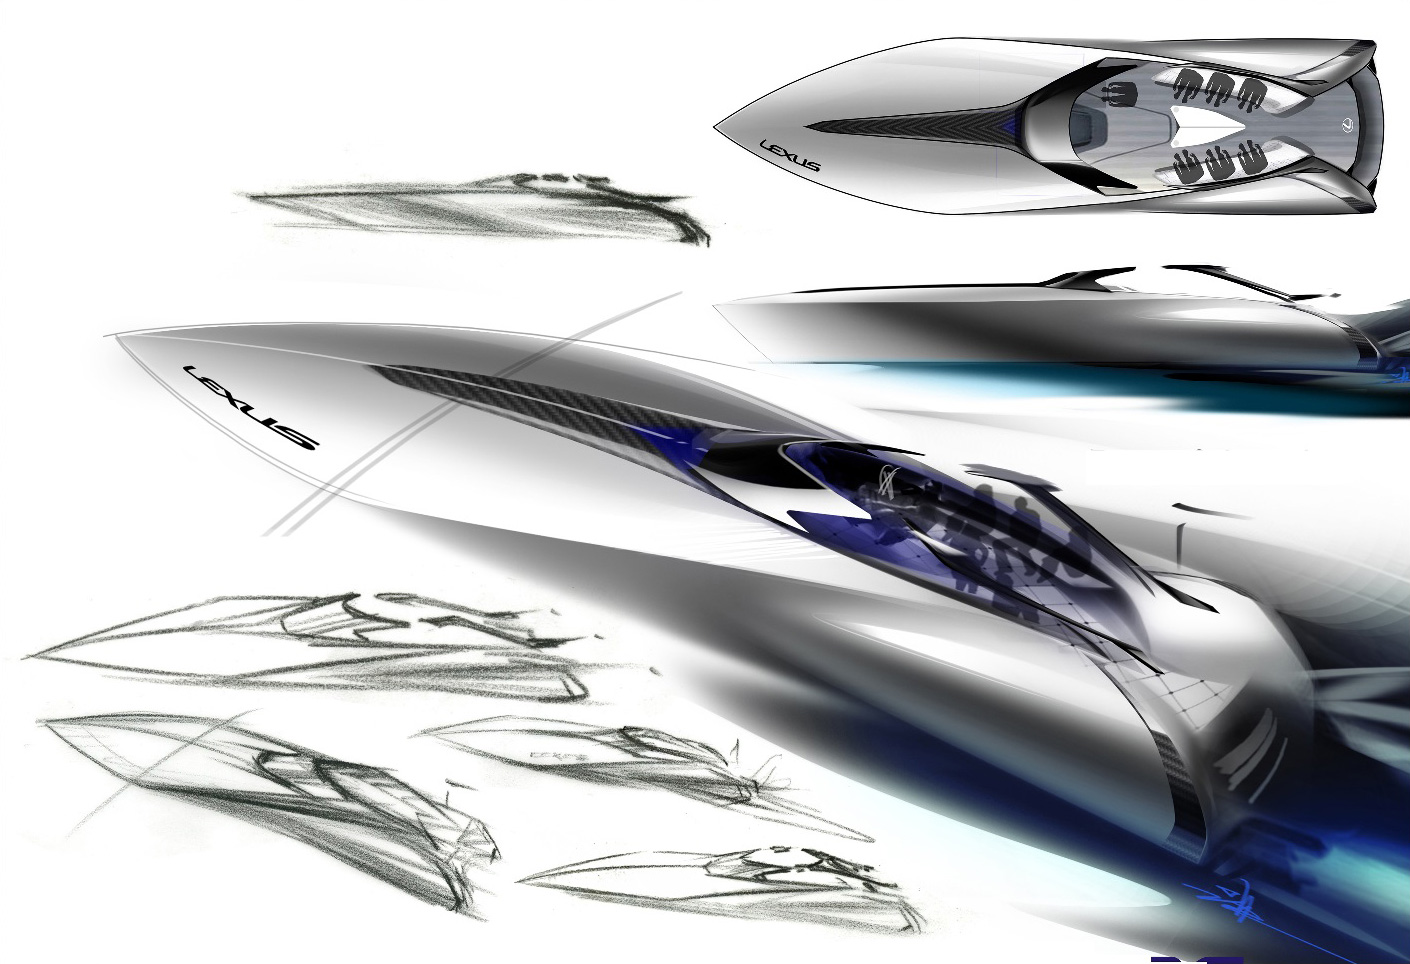 LEXUS Sport Yacht Concept